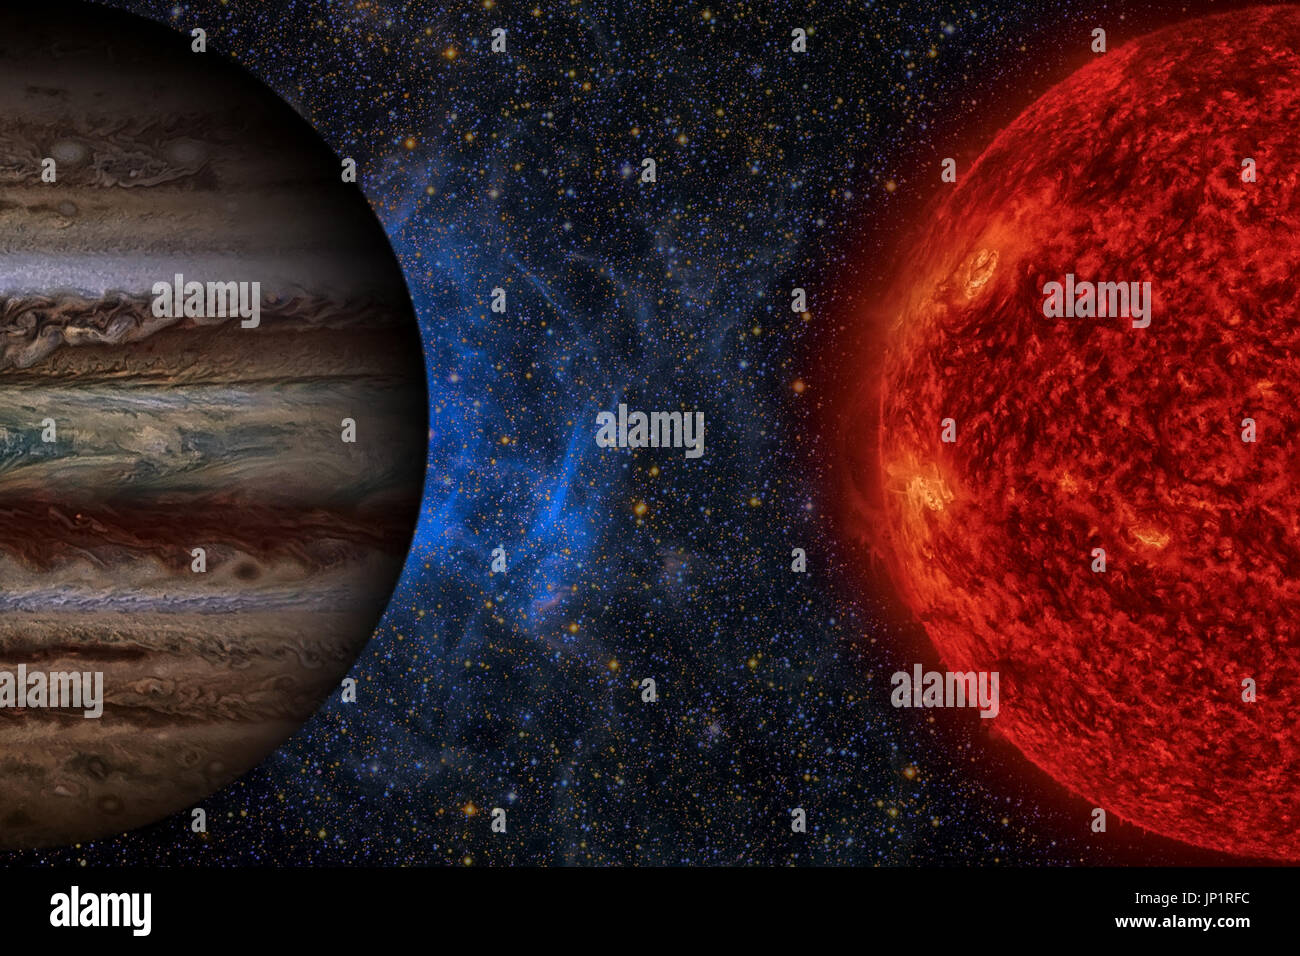 Sonnensystem - Jupiter. Es ist der fünfte Planet von der Sonne und der größte in unserem Sonnensystem. Seine riesigen Planeten mit einer Masse ein Tausendstel der Stockfoto